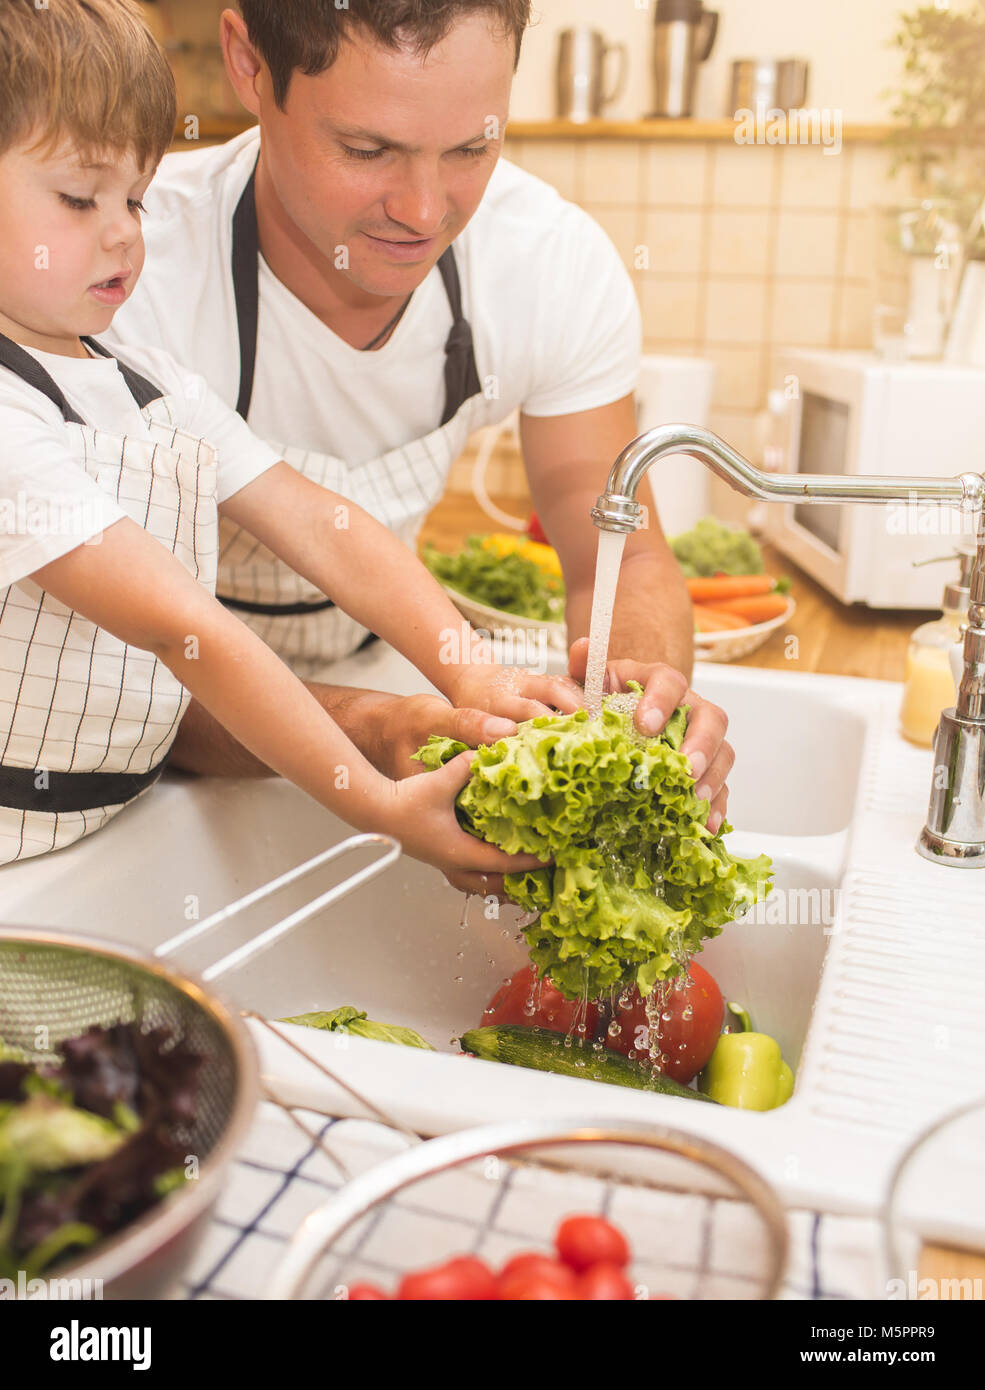 El hombre y el muchacho lavando verduras antes de comerlas. Foto de stock